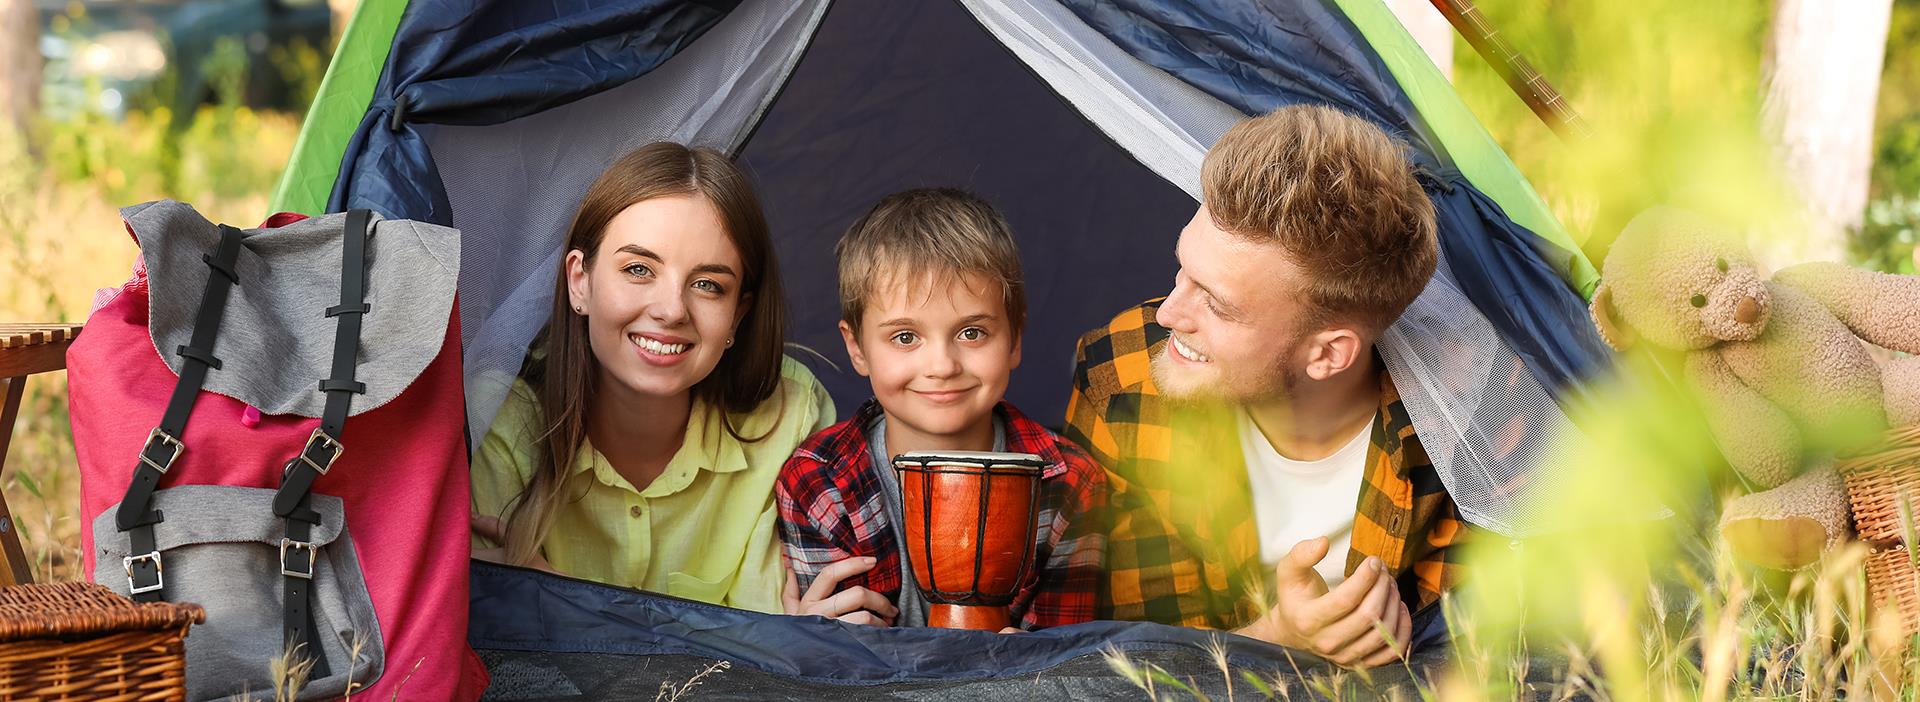 Séjour en famille sur l’un de nos emplacement camping pour tente du camping les Amandiers près de Pézenas